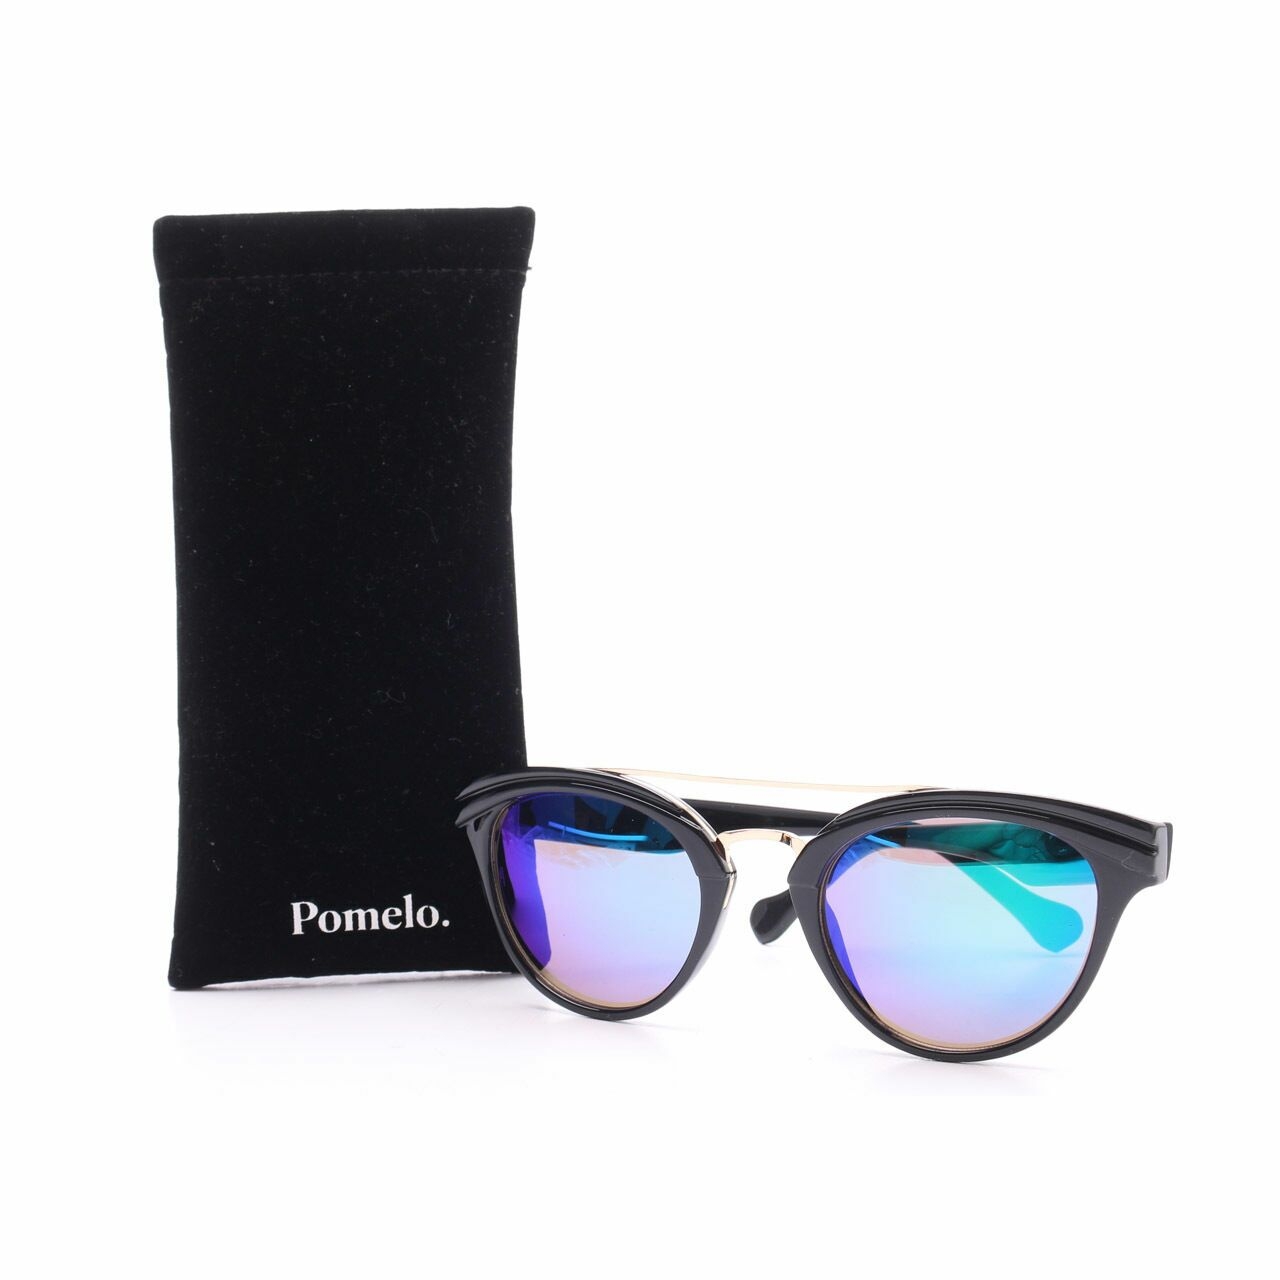 Pomelo. Black Sunglasses